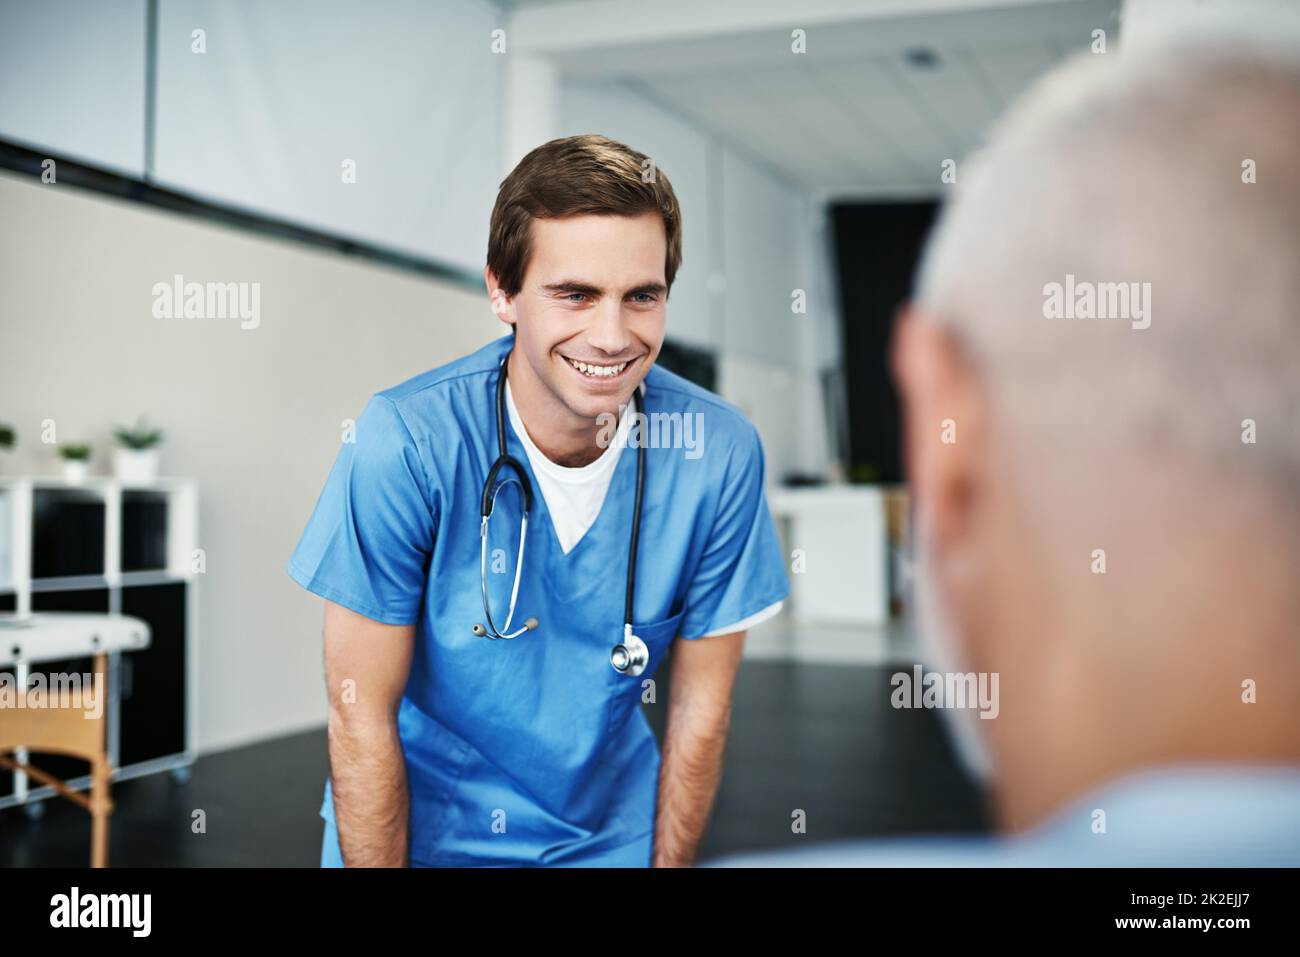 Er dient mit aufrichtiger Barmherzigkeit. Aufnahme eines Krankenpflegers, der sich um einen älteren Patienten kümmert. Stockfoto